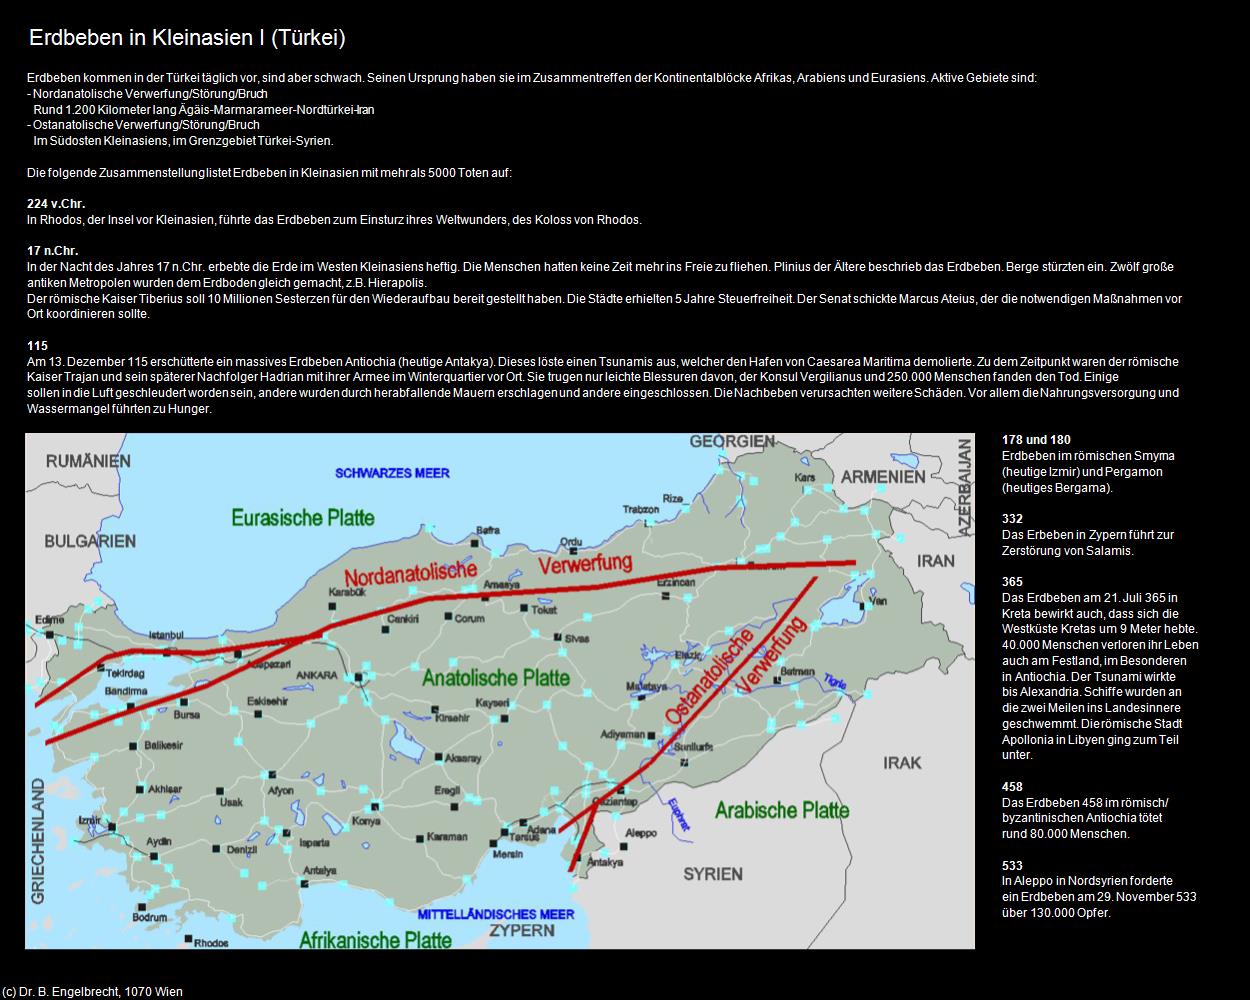 Erdbeben in Kleinasien I  (Türkei-Land und Leute) in TÜRKEI